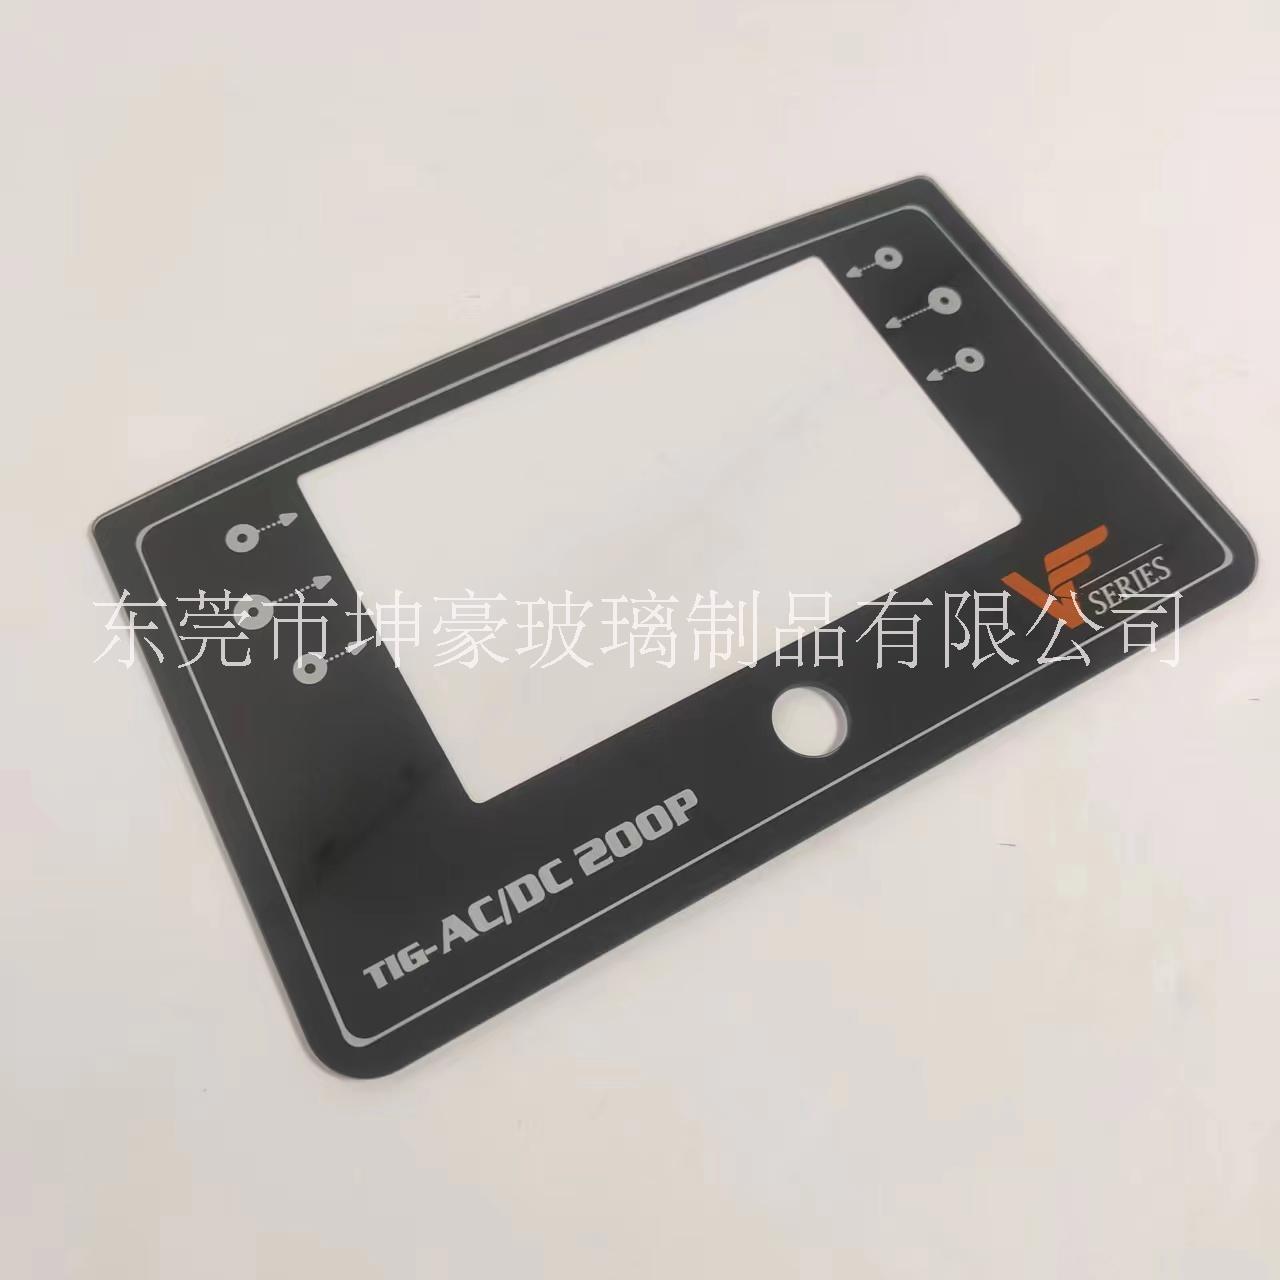 丝印玻璃面板智能触摸屏玻璃 2mm设备保护盖板玻璃丝印黑色油墨工艺批量生产图片